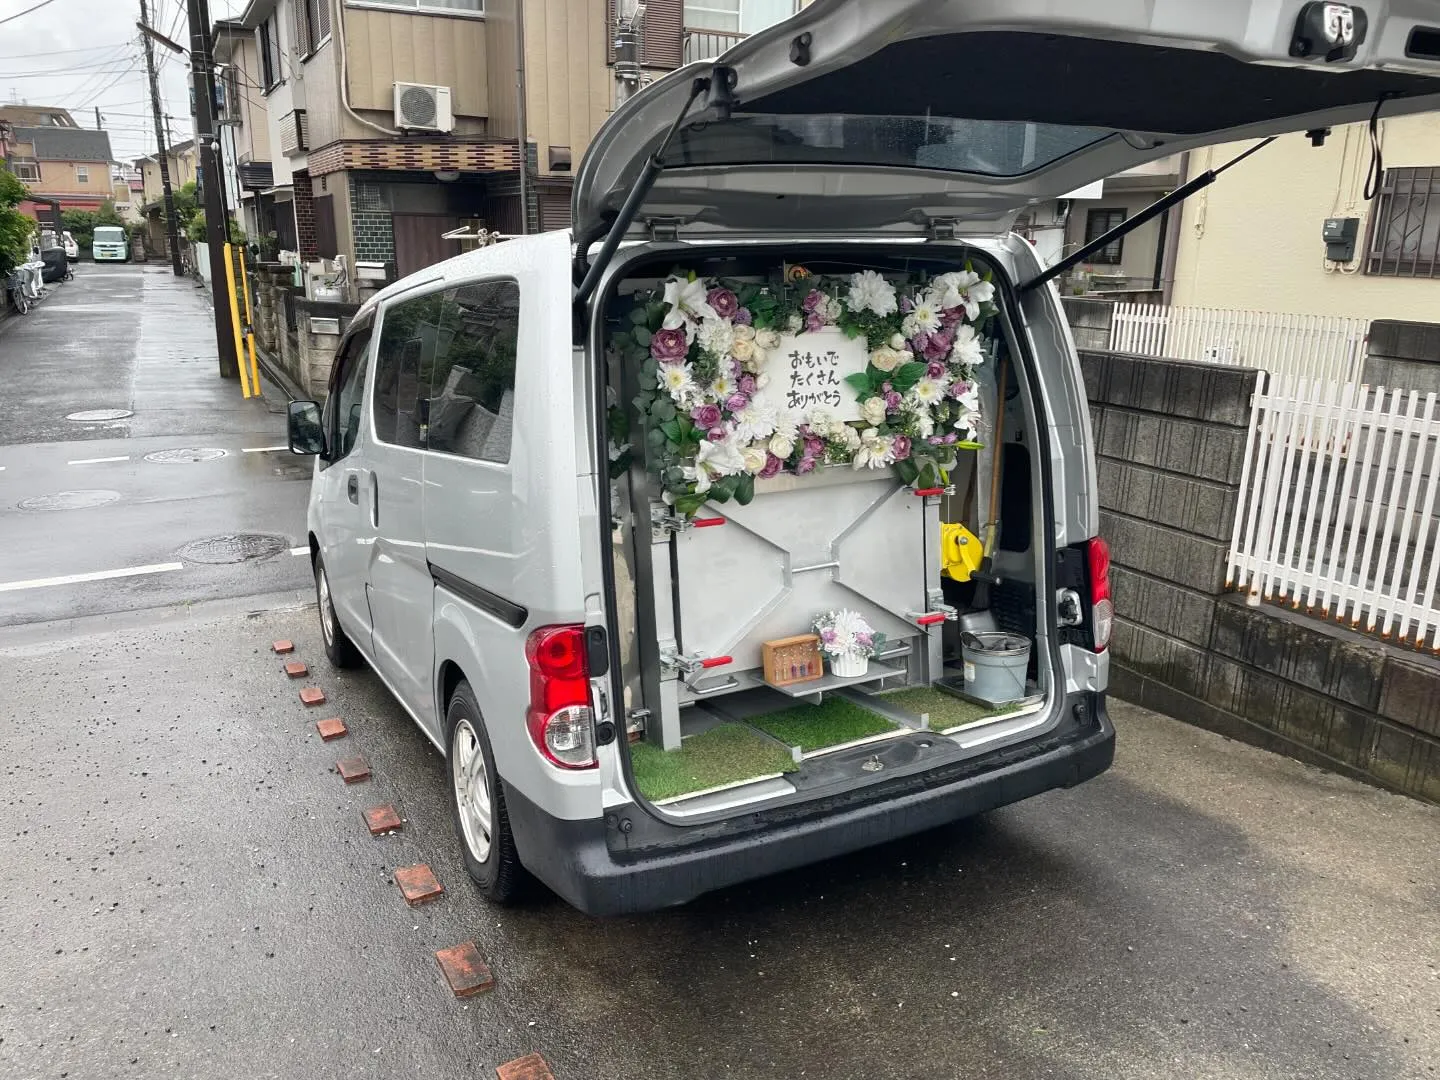 東京都武蔵村山市にて猫ちゃんのご火葬に伺いました。